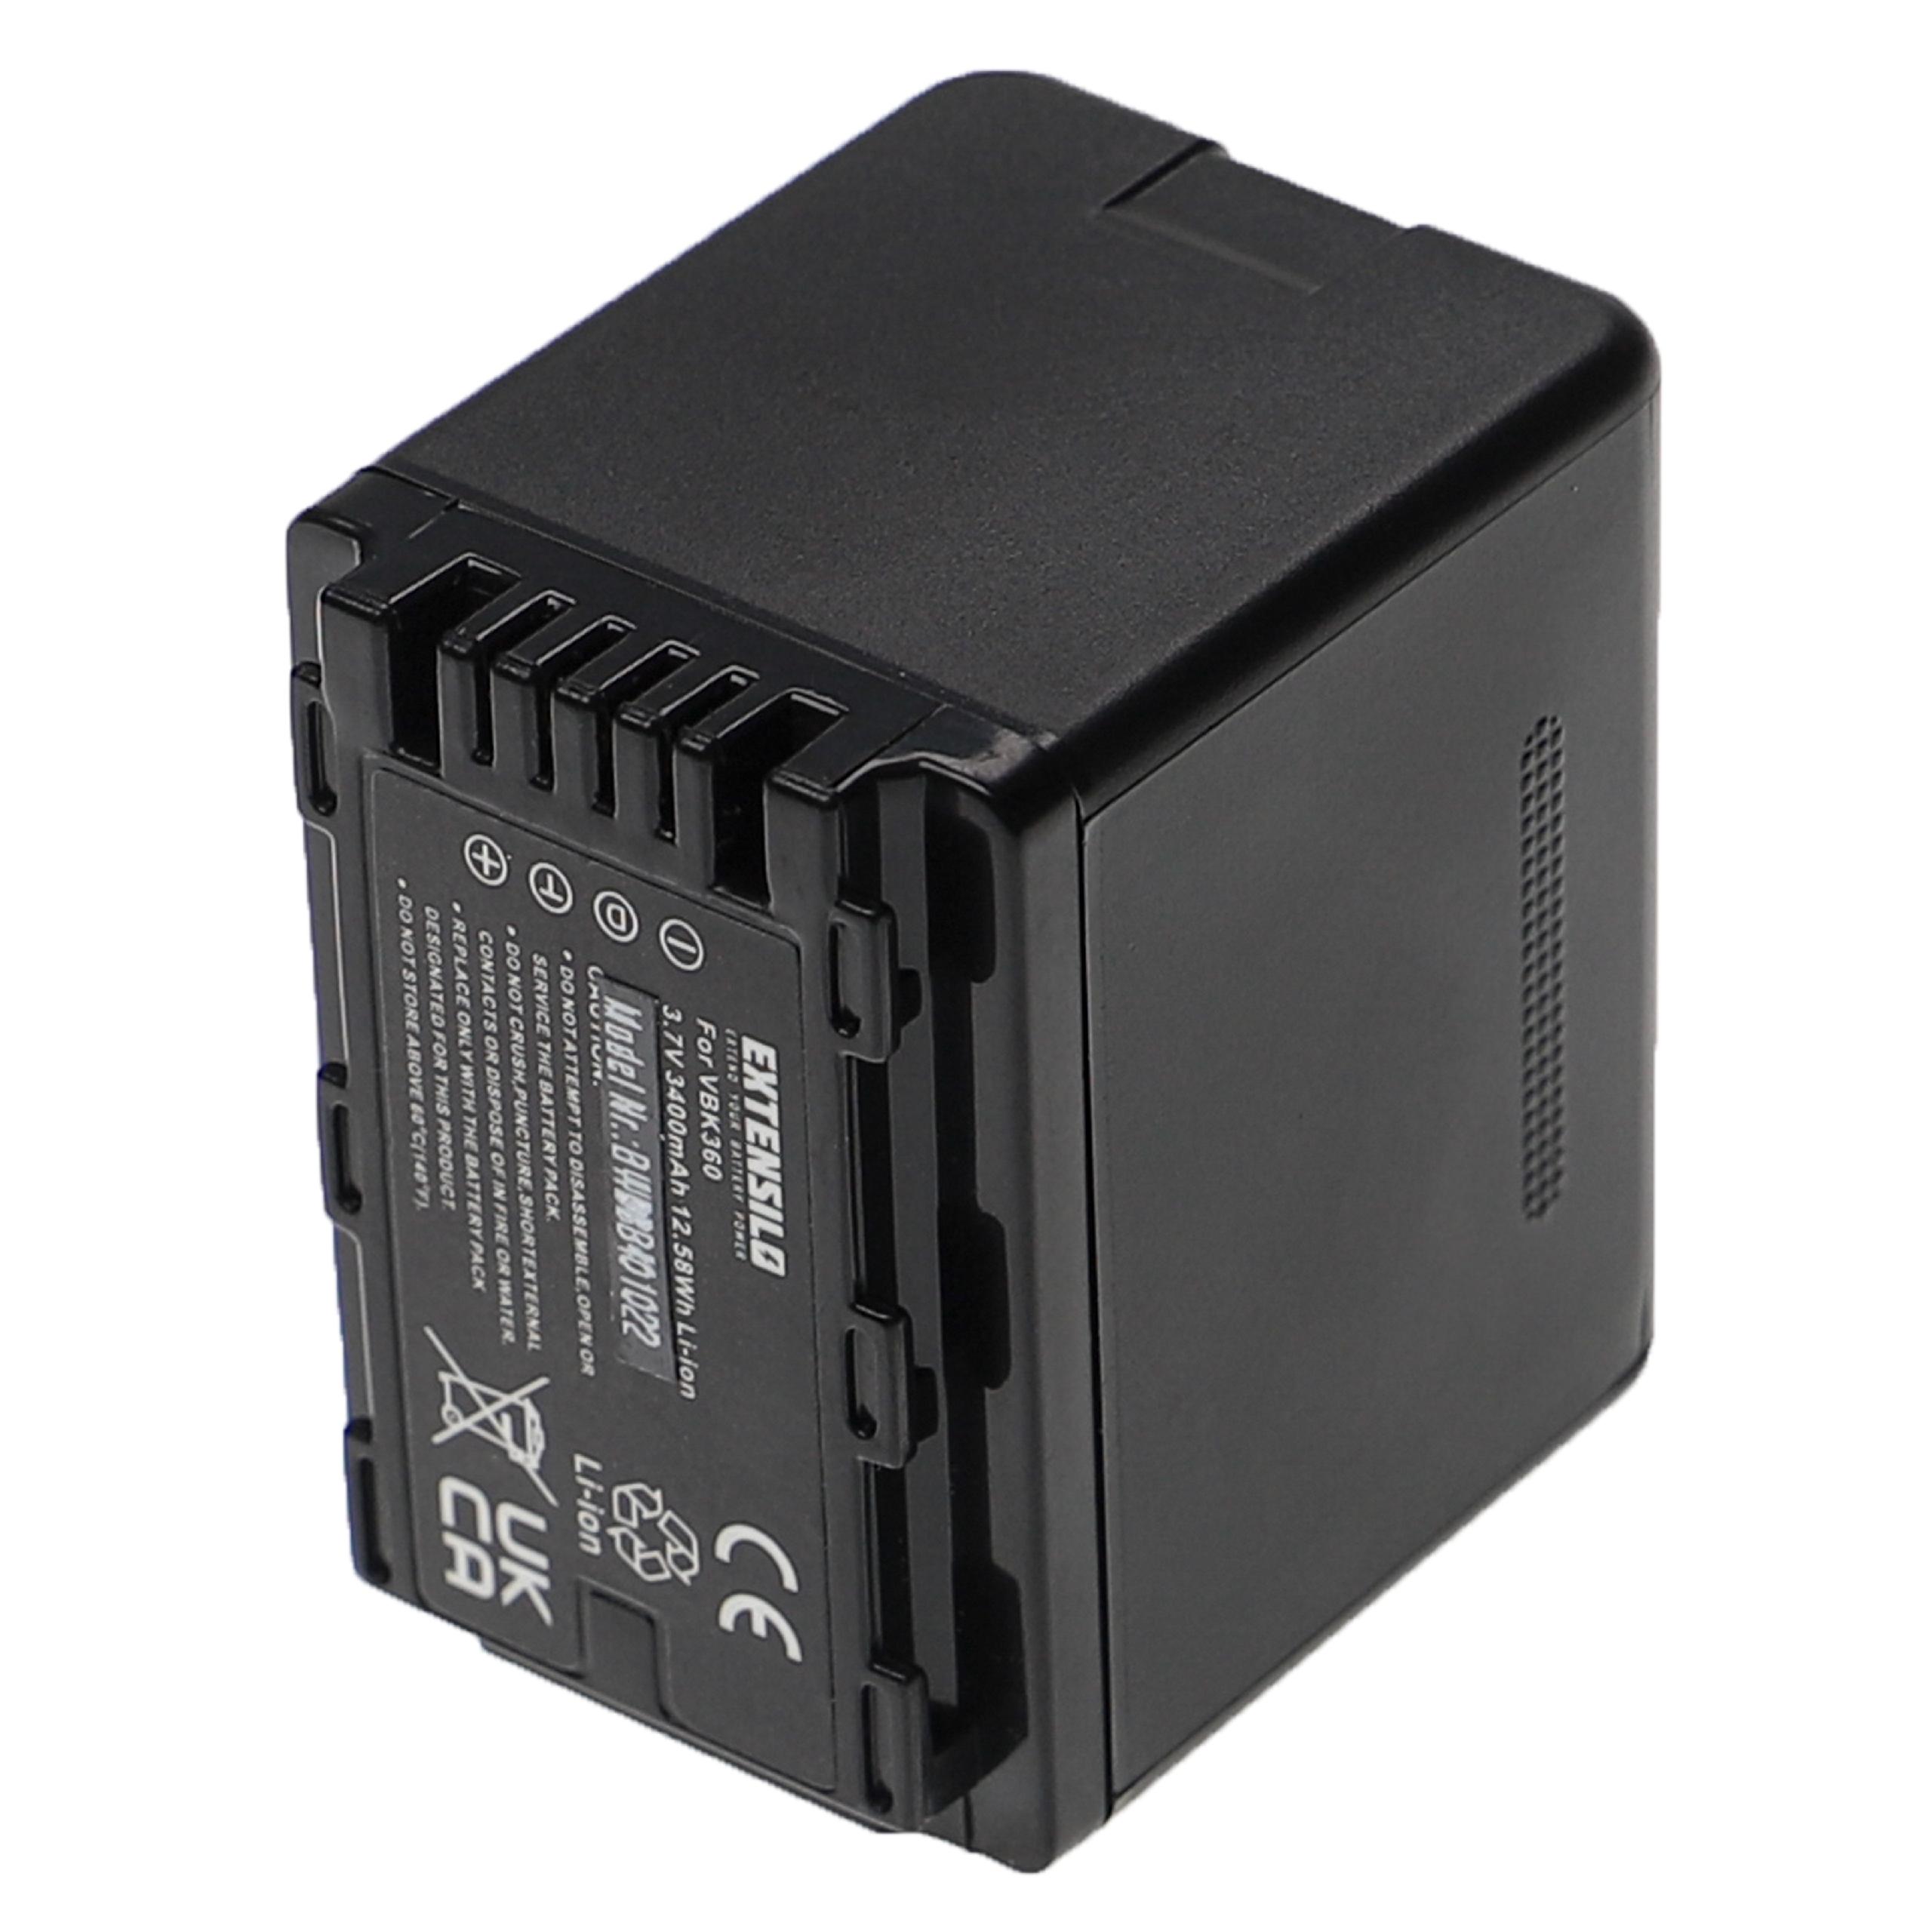 Battery Replacement for Panasonic VW-VBK360 - 3400mAh, 3.7V, Li-Ion